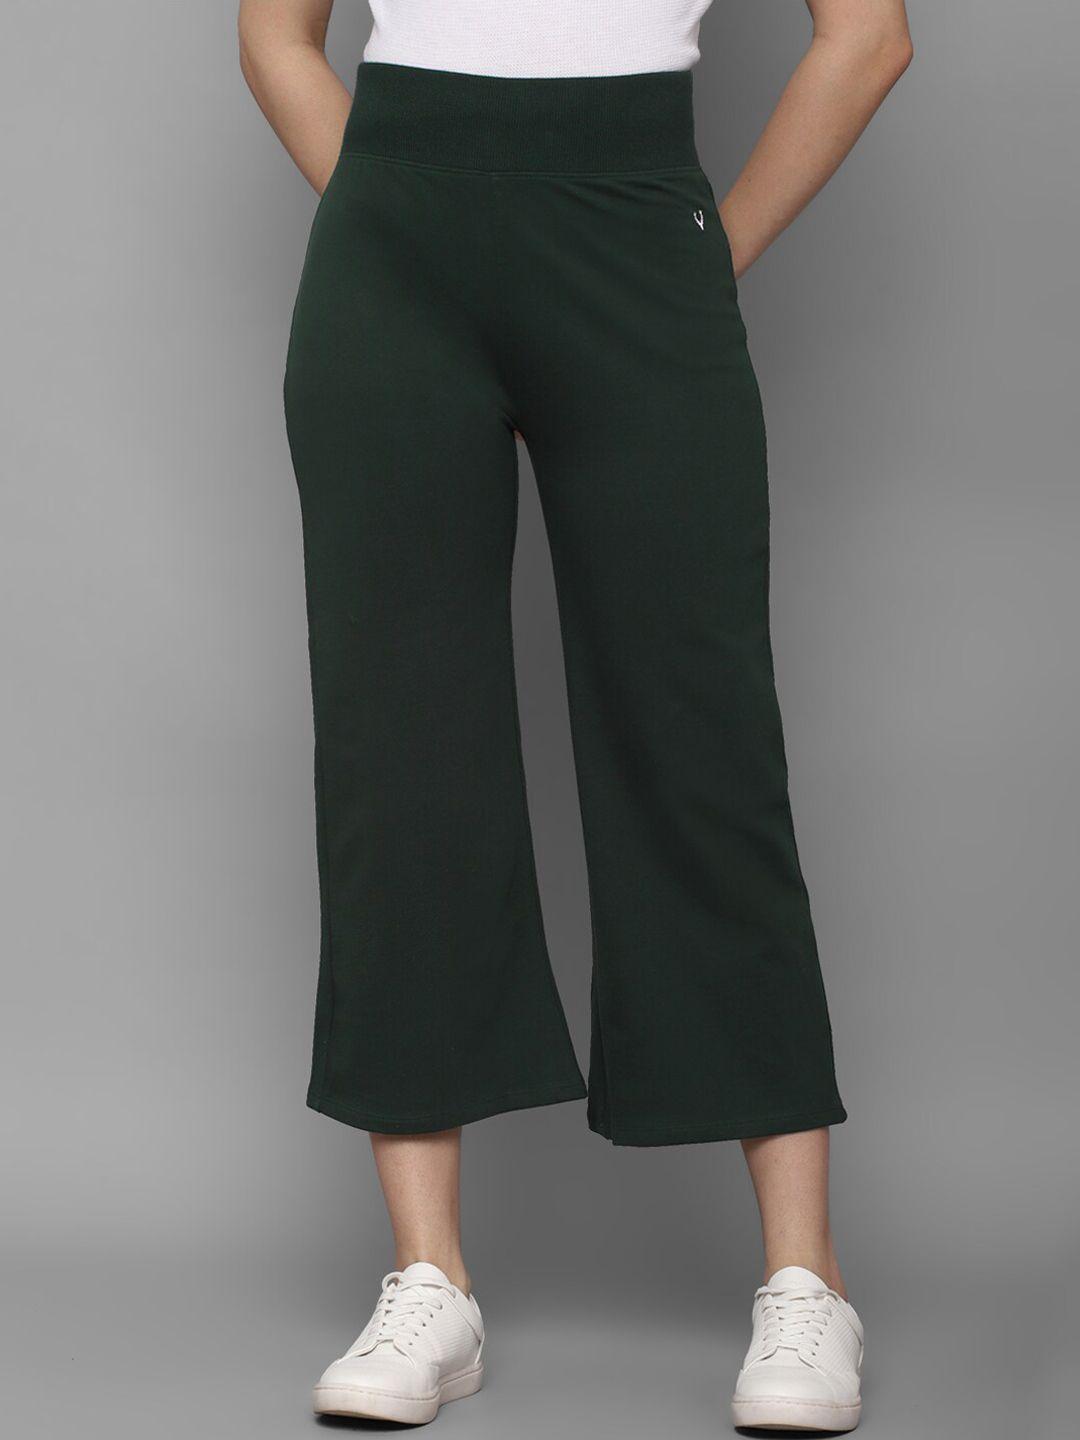 Allen Solly Woman Women Green Trousers